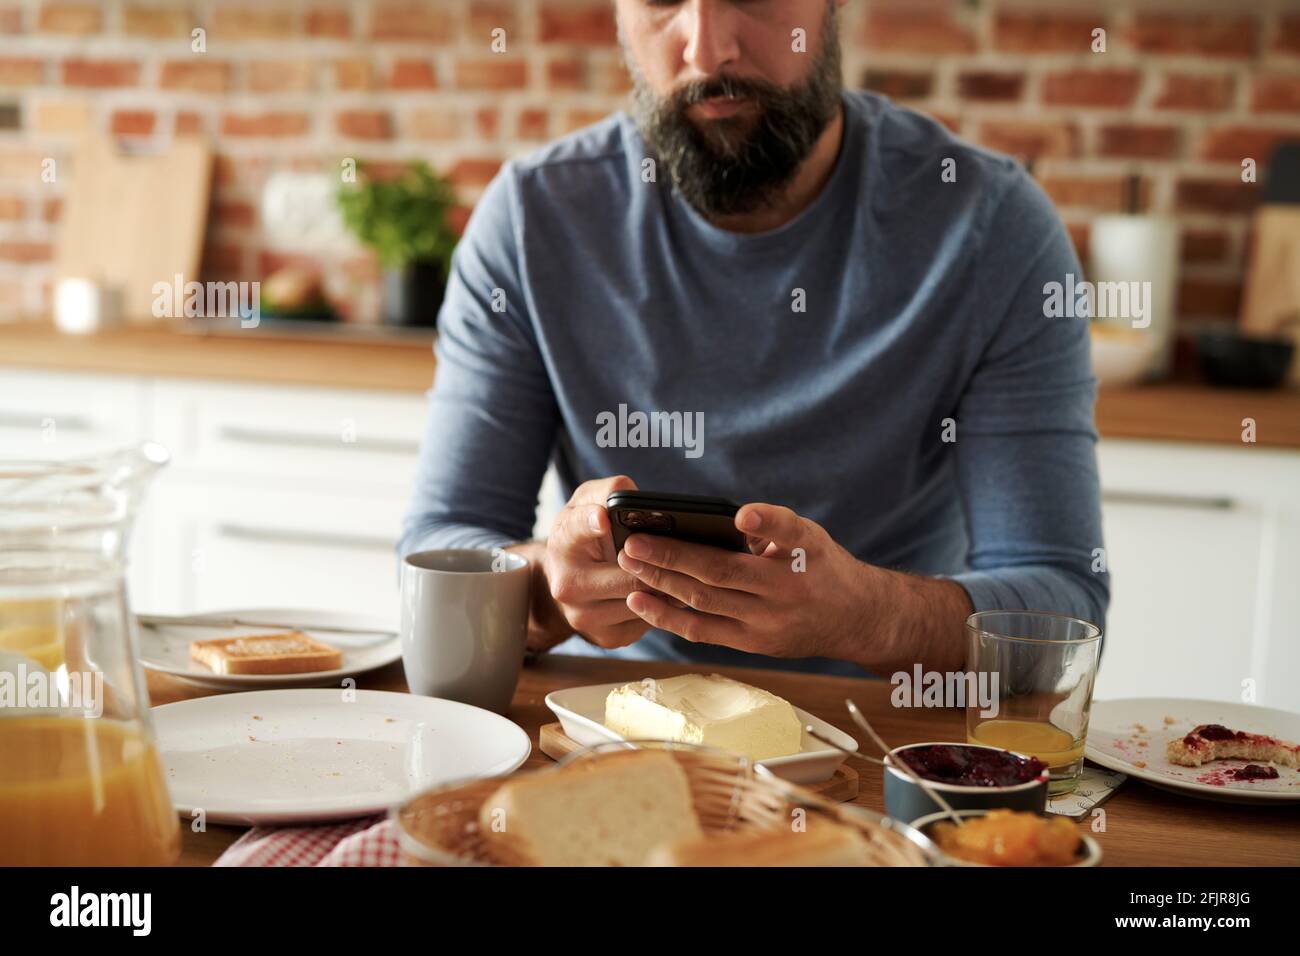 Primer plano del hombre usando el teléfono móvil durante el desayuno Foto de stock